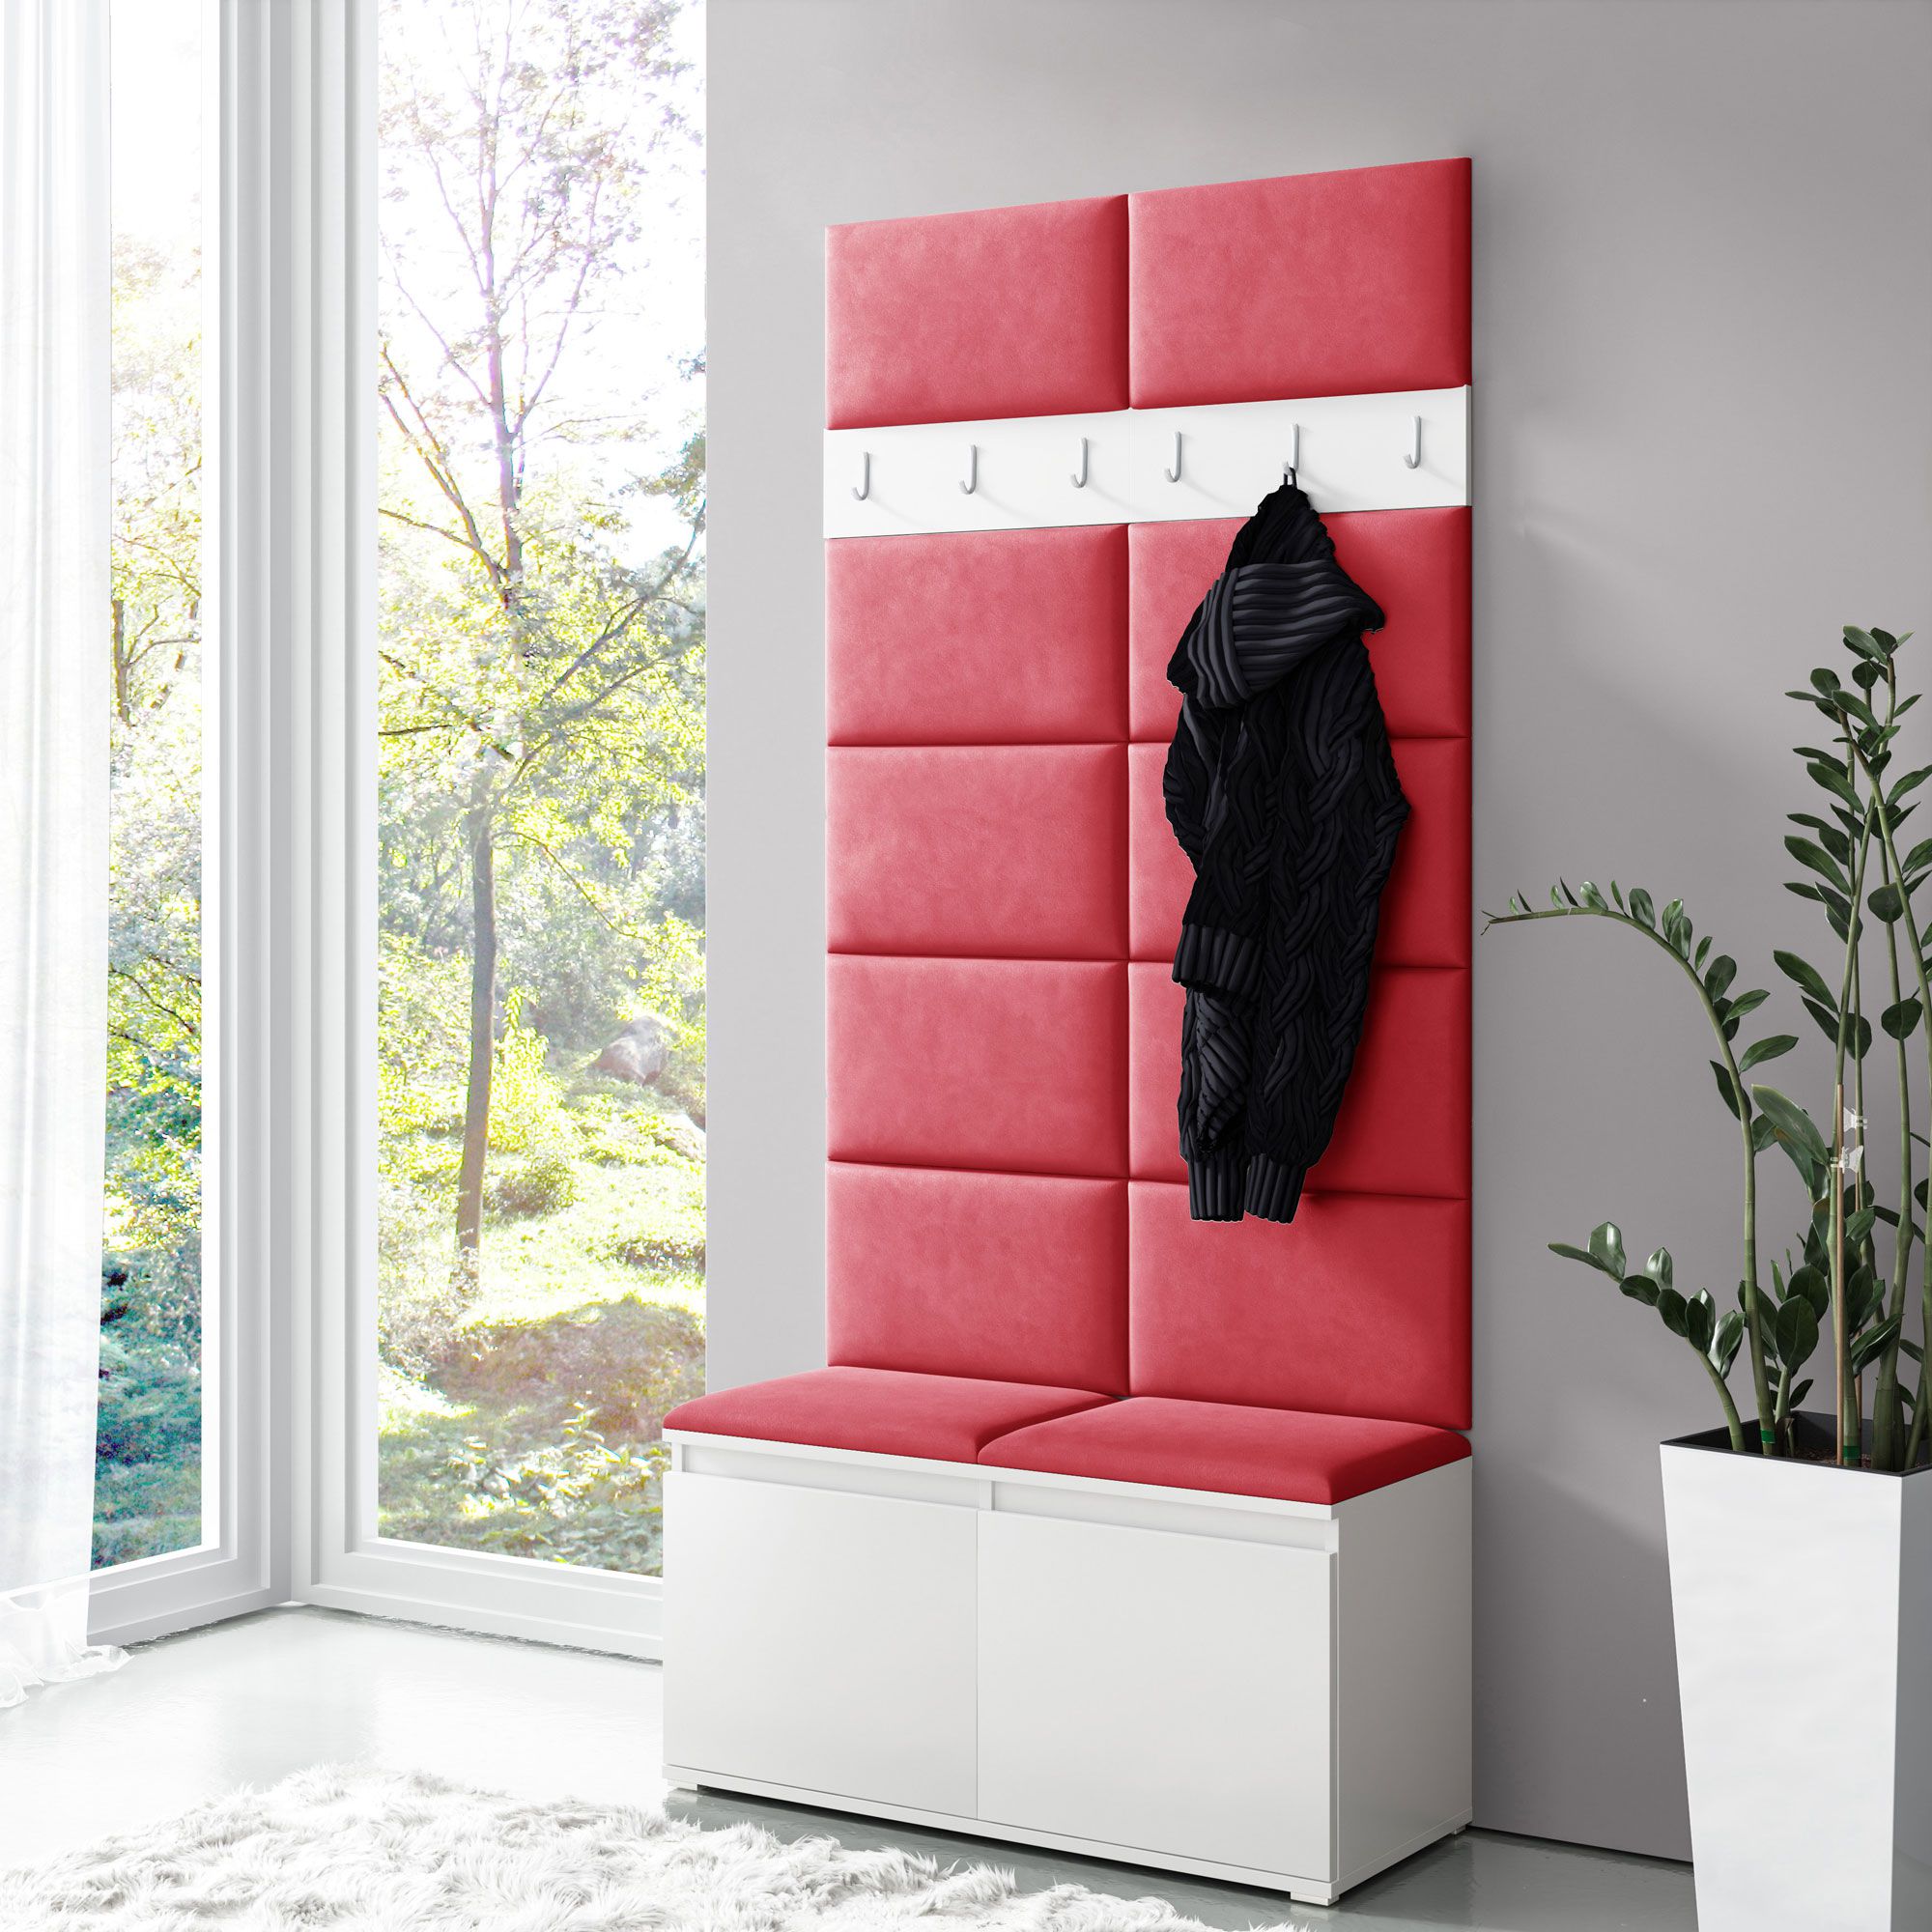 Schmale Garderobe 01 mit Sitzbank gepolstert, Farbe: Weiß/Red, 215 x 100 x 40 cm, für 8 Paar Schuhe, 6 Kleiderhaken, 4 Fächer